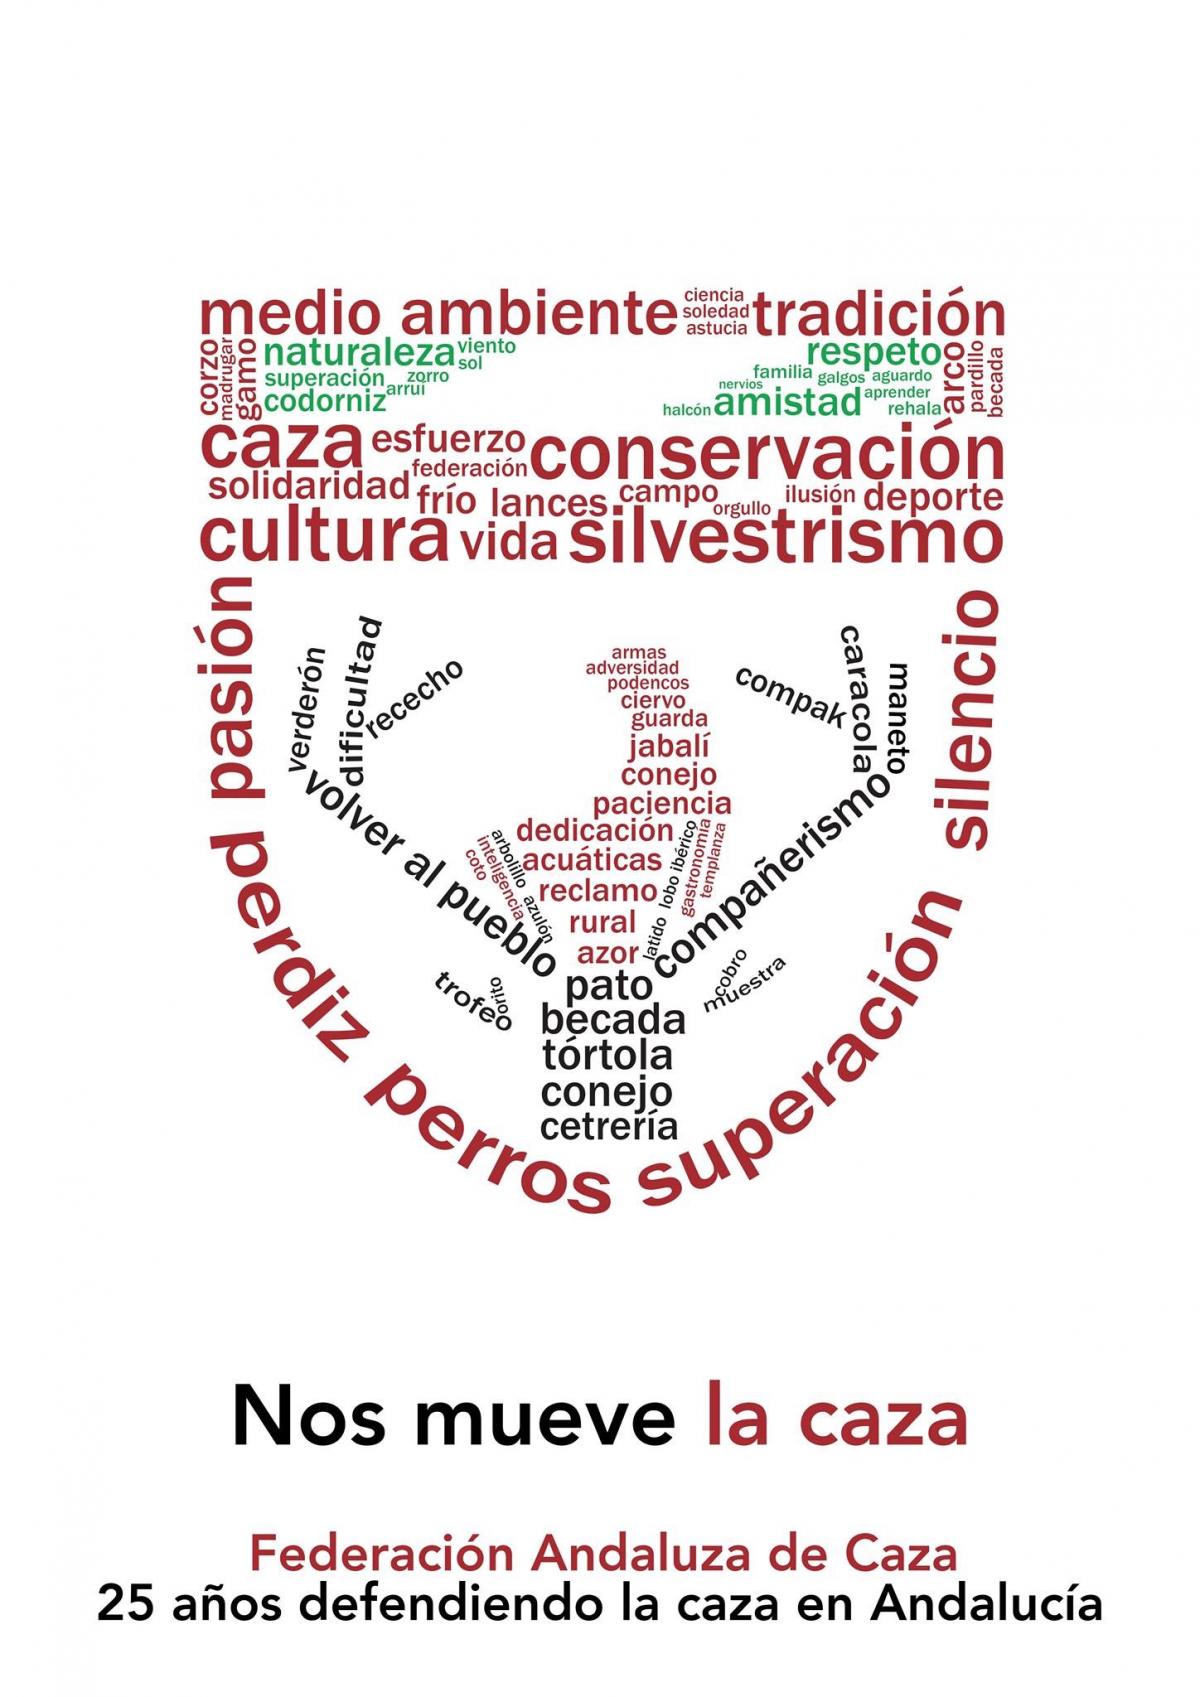 La Federación Andaluza impulsa el acceso de los jóvenes a la caza